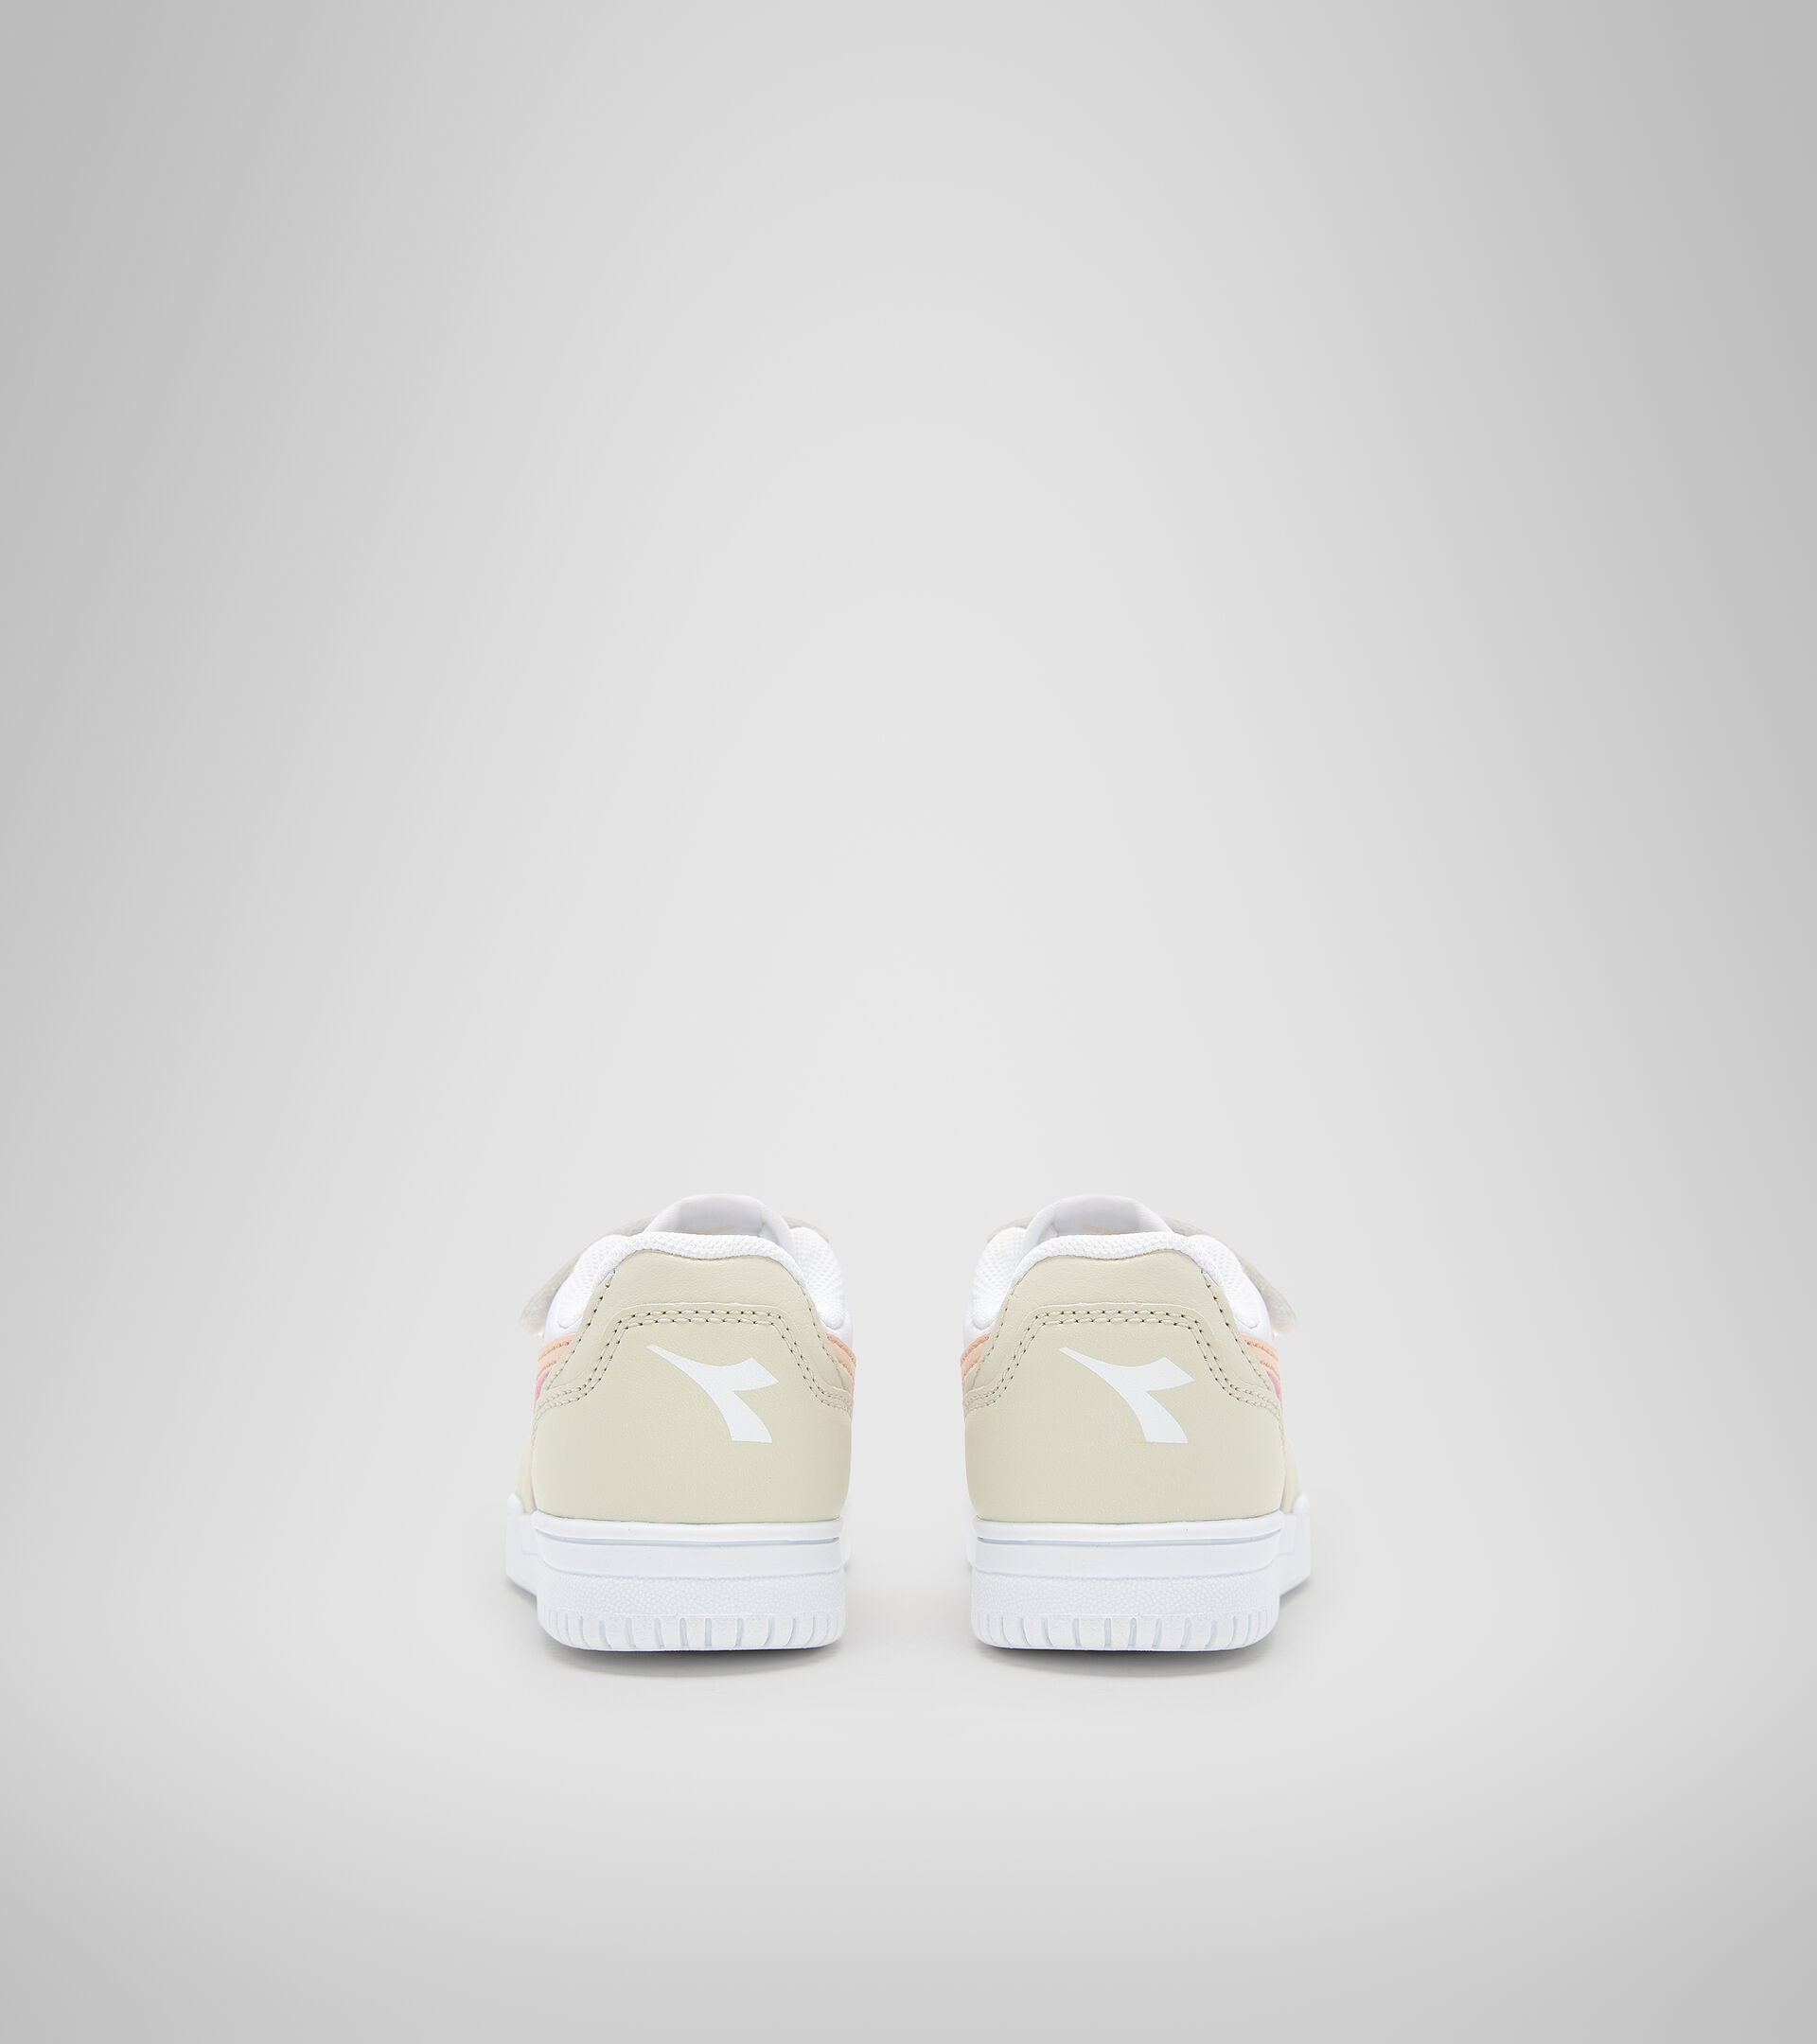 Sports shoes - Toddlers 1-4 years RAPTOR LOW TD WHITE BONE/PASTEL ROSE TAN - Diadora